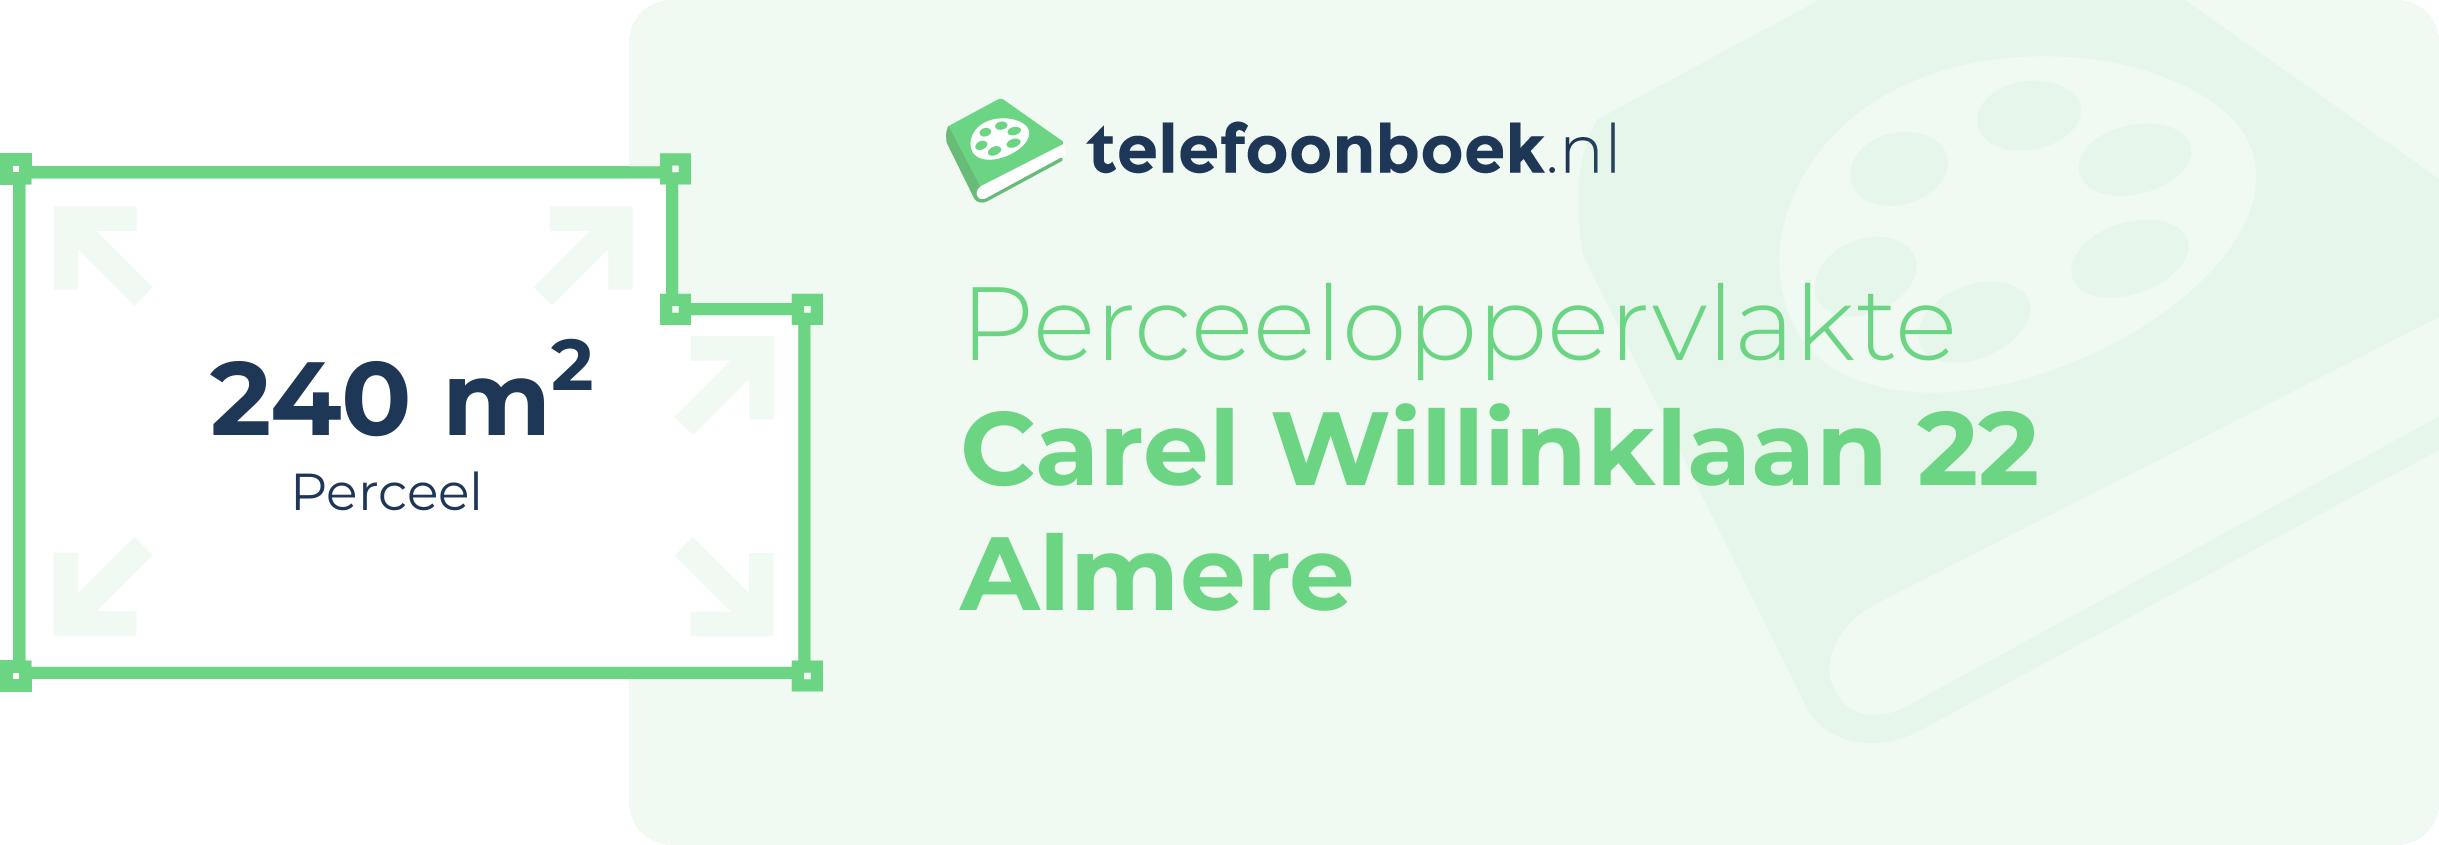 Perceeloppervlakte Carel Willinklaan 22 Almere